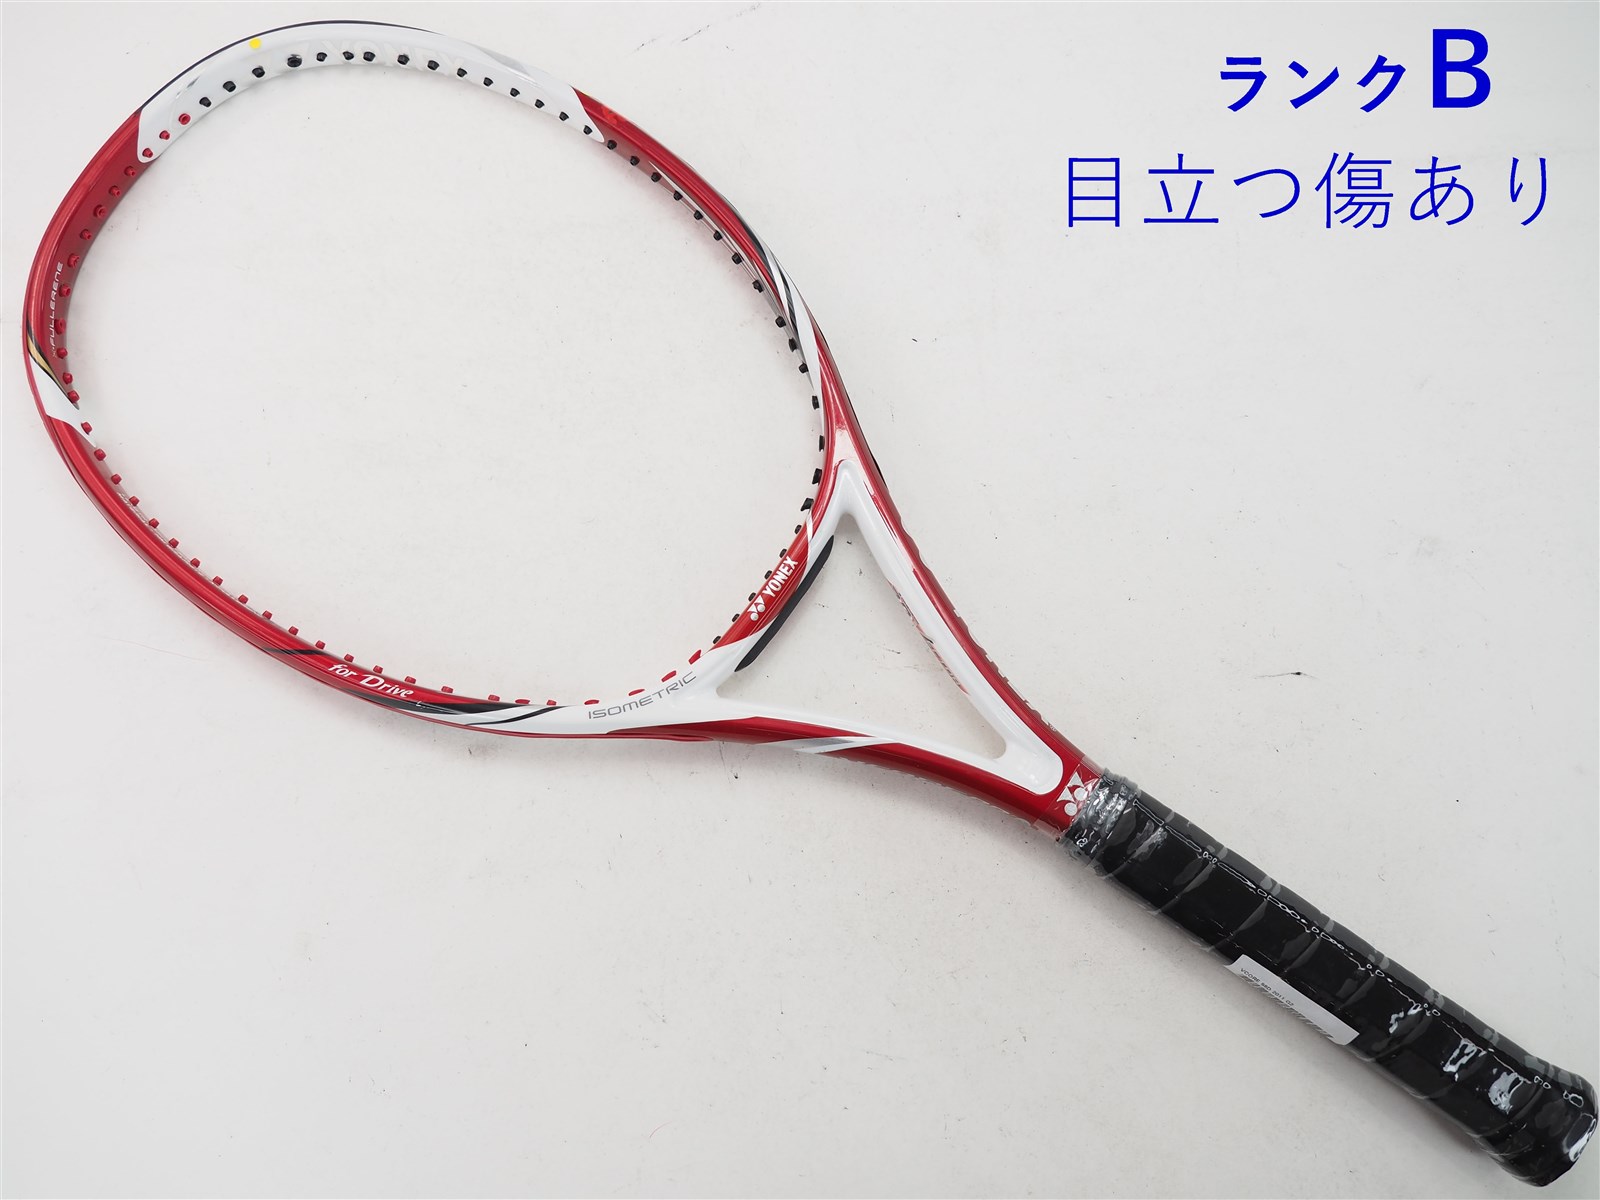 テニスラケット ヨネックス ブイコア 98D 2011年モデル (G2)YONEX VCORE 98D 2011